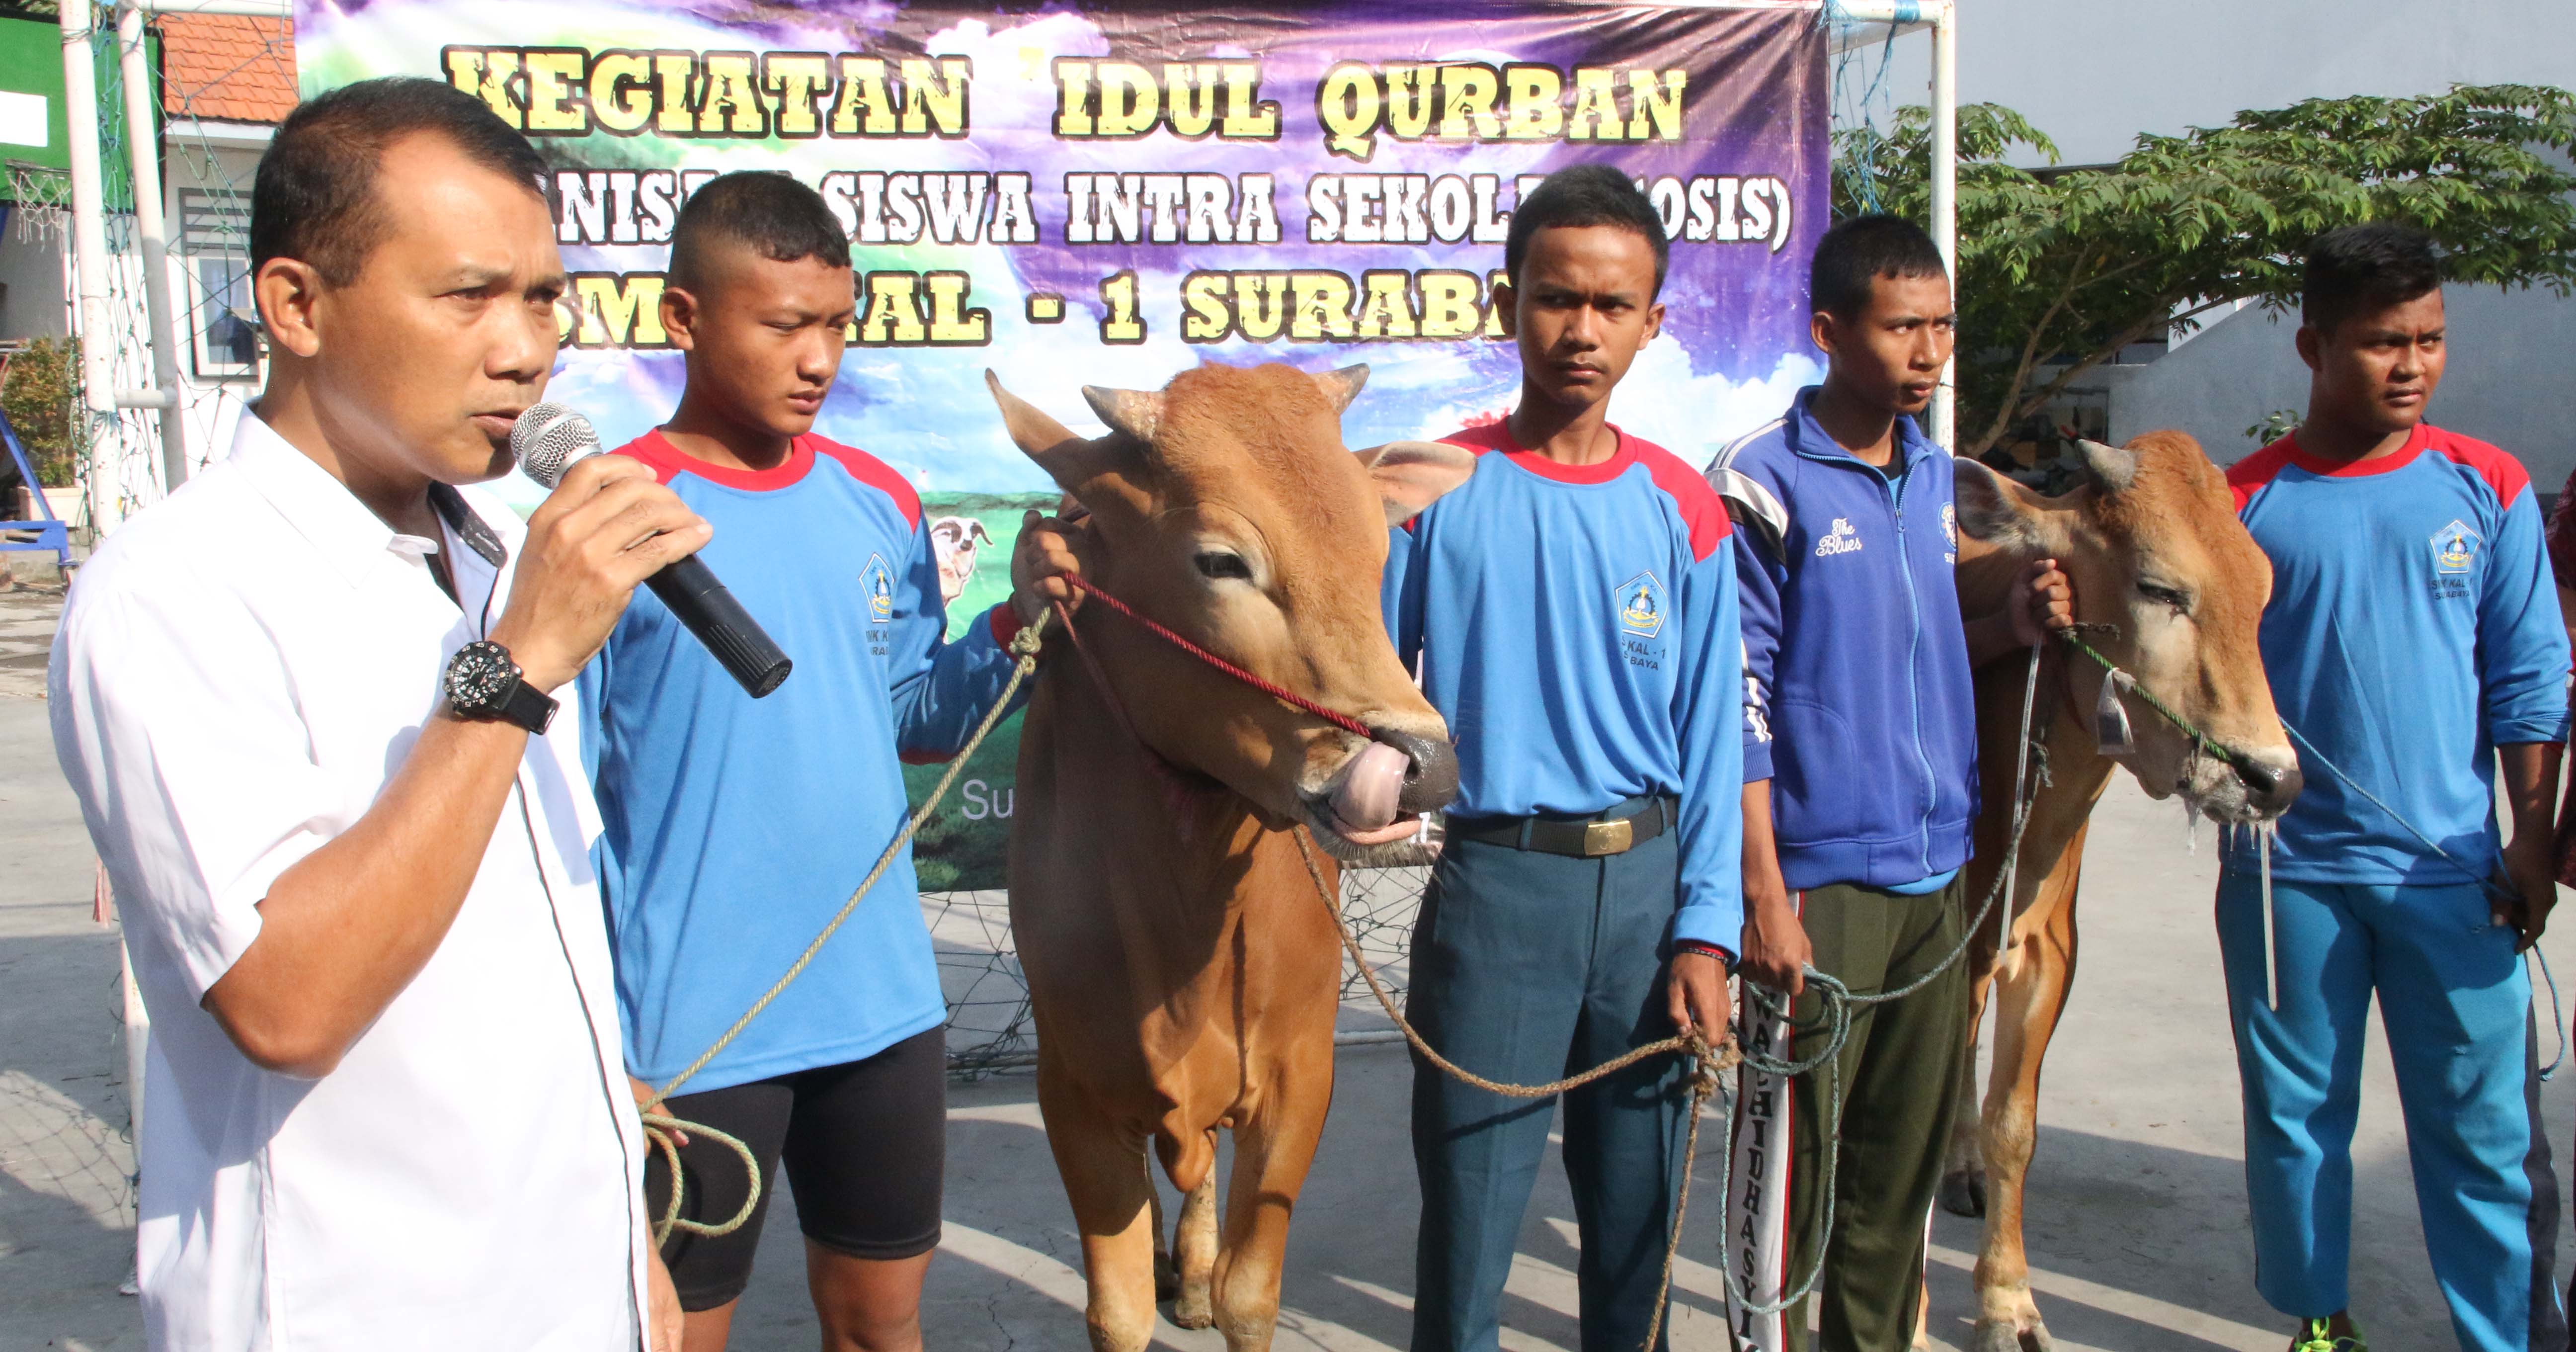 Kepala SMK KAL-1 Surabaya Drs. Burhan, M.Pd memberikan motifasi kepada siswanya  untuk berpartisipasi dalam  penyembelihan hewan qurban tahun 1438 H di halaman sekolah.